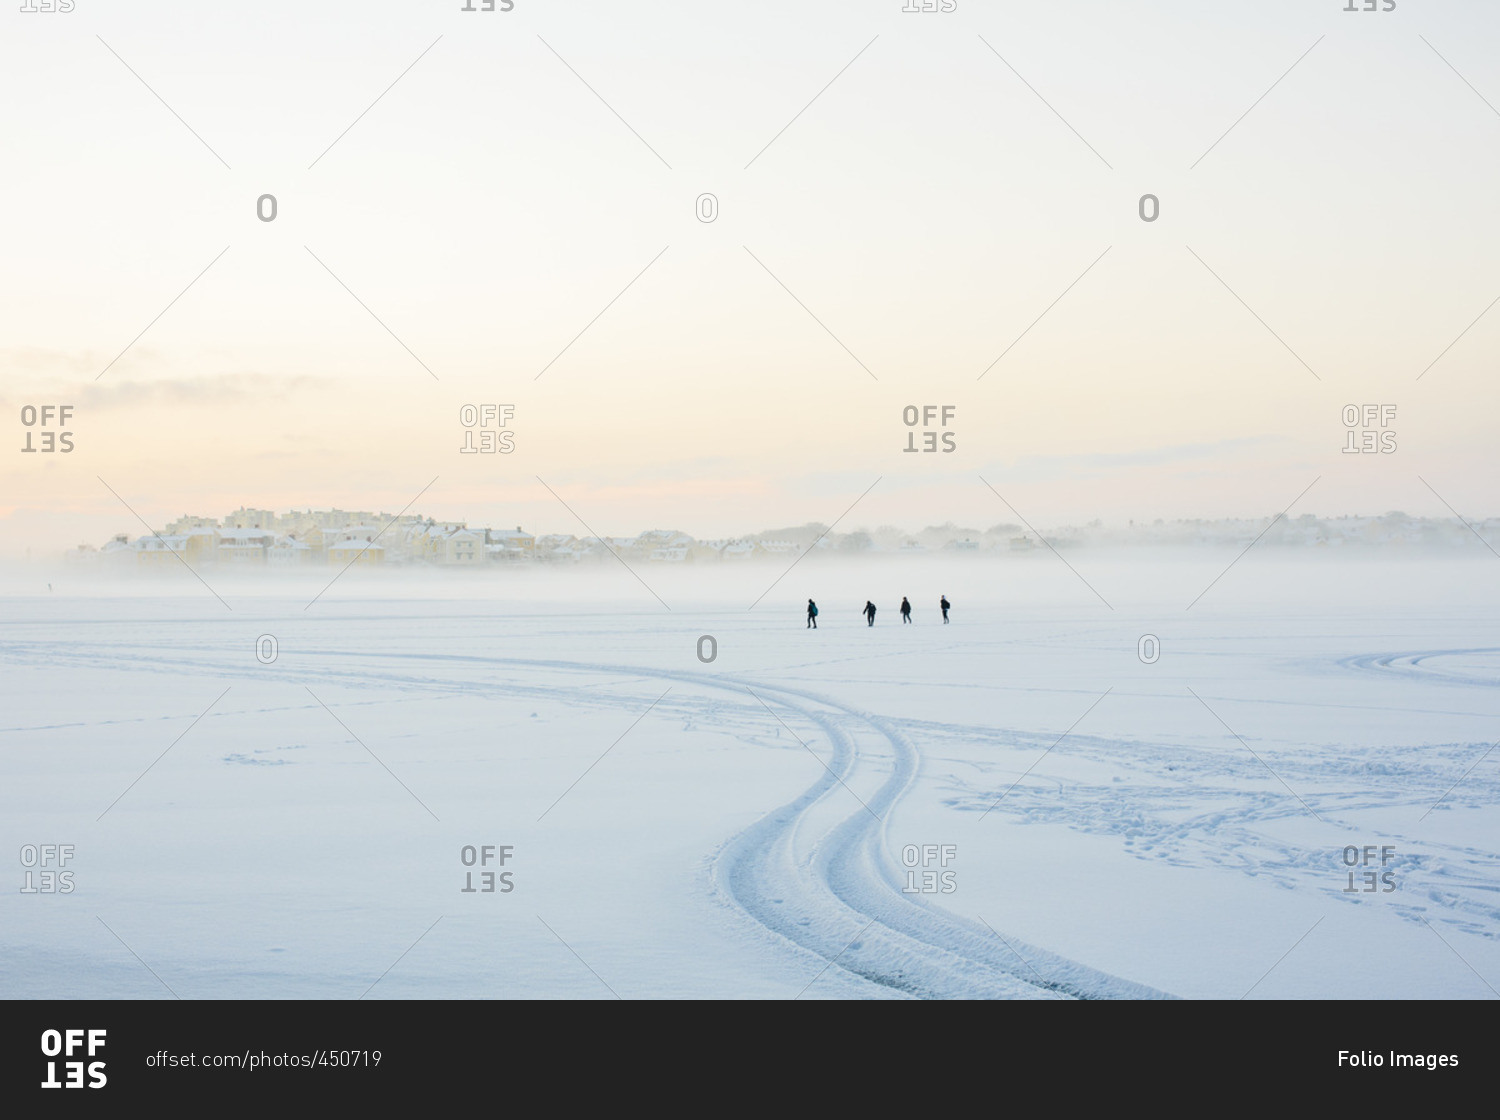 Sweden, Blekinge, Karlskrona, Borgmastarefjarden, Snowy landscape with people walking in distance